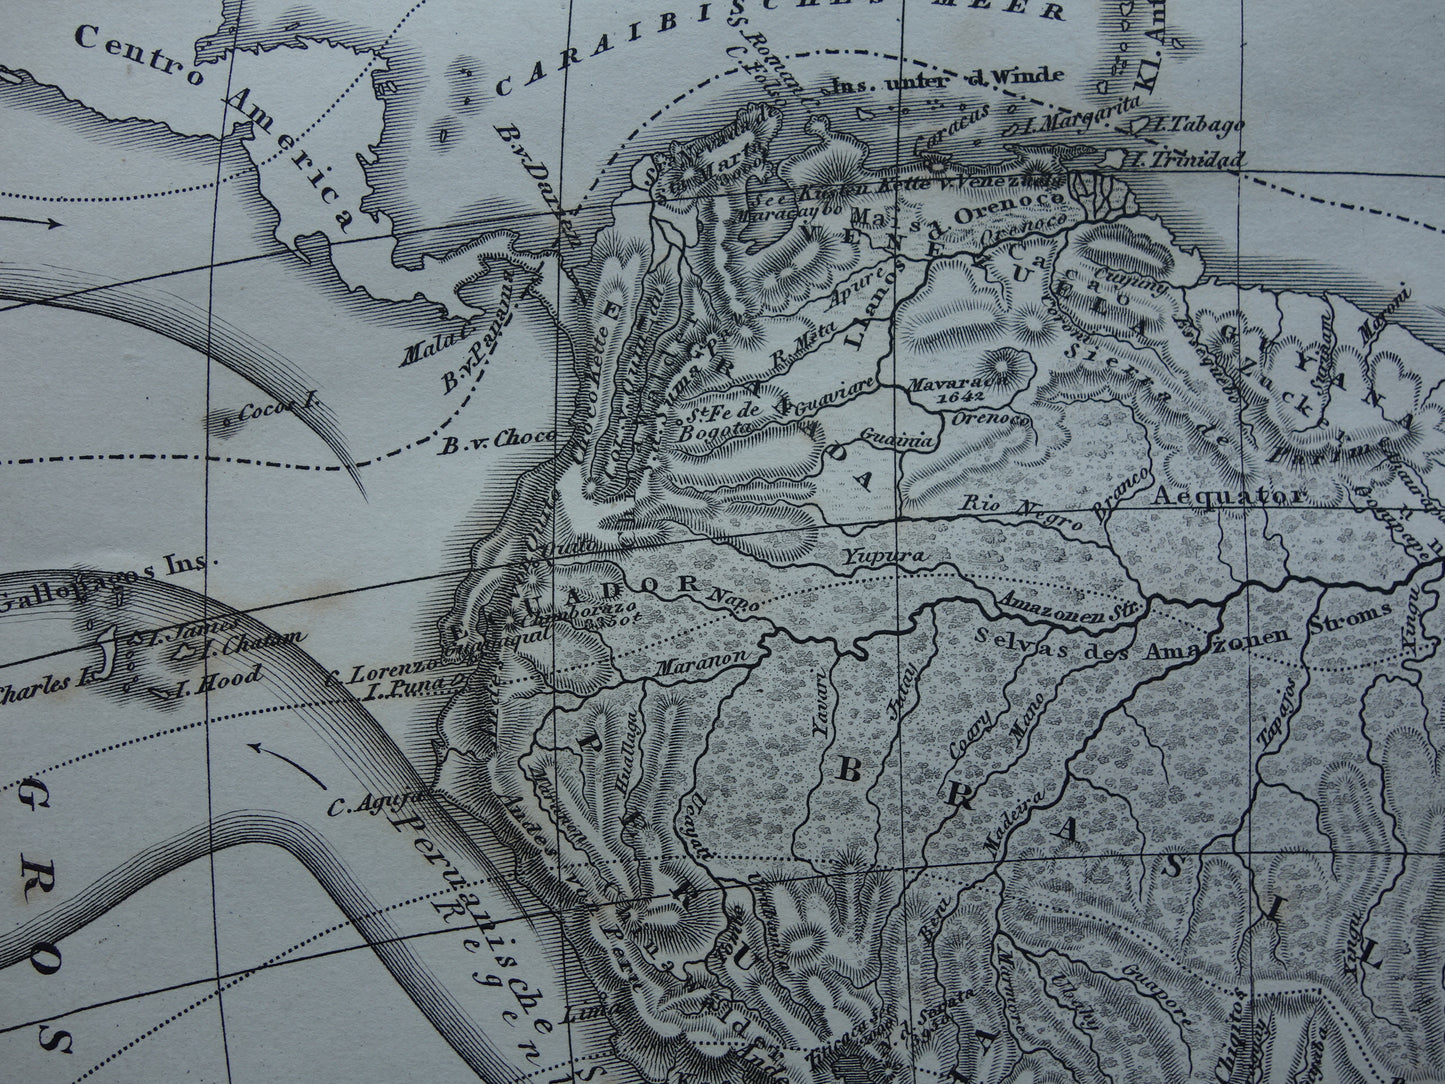 ZUID AMERIKA vintage landkaart 170+ jaar oude kaart van rivieren en oceanen uit 1849 - originele vintage historische kaarten